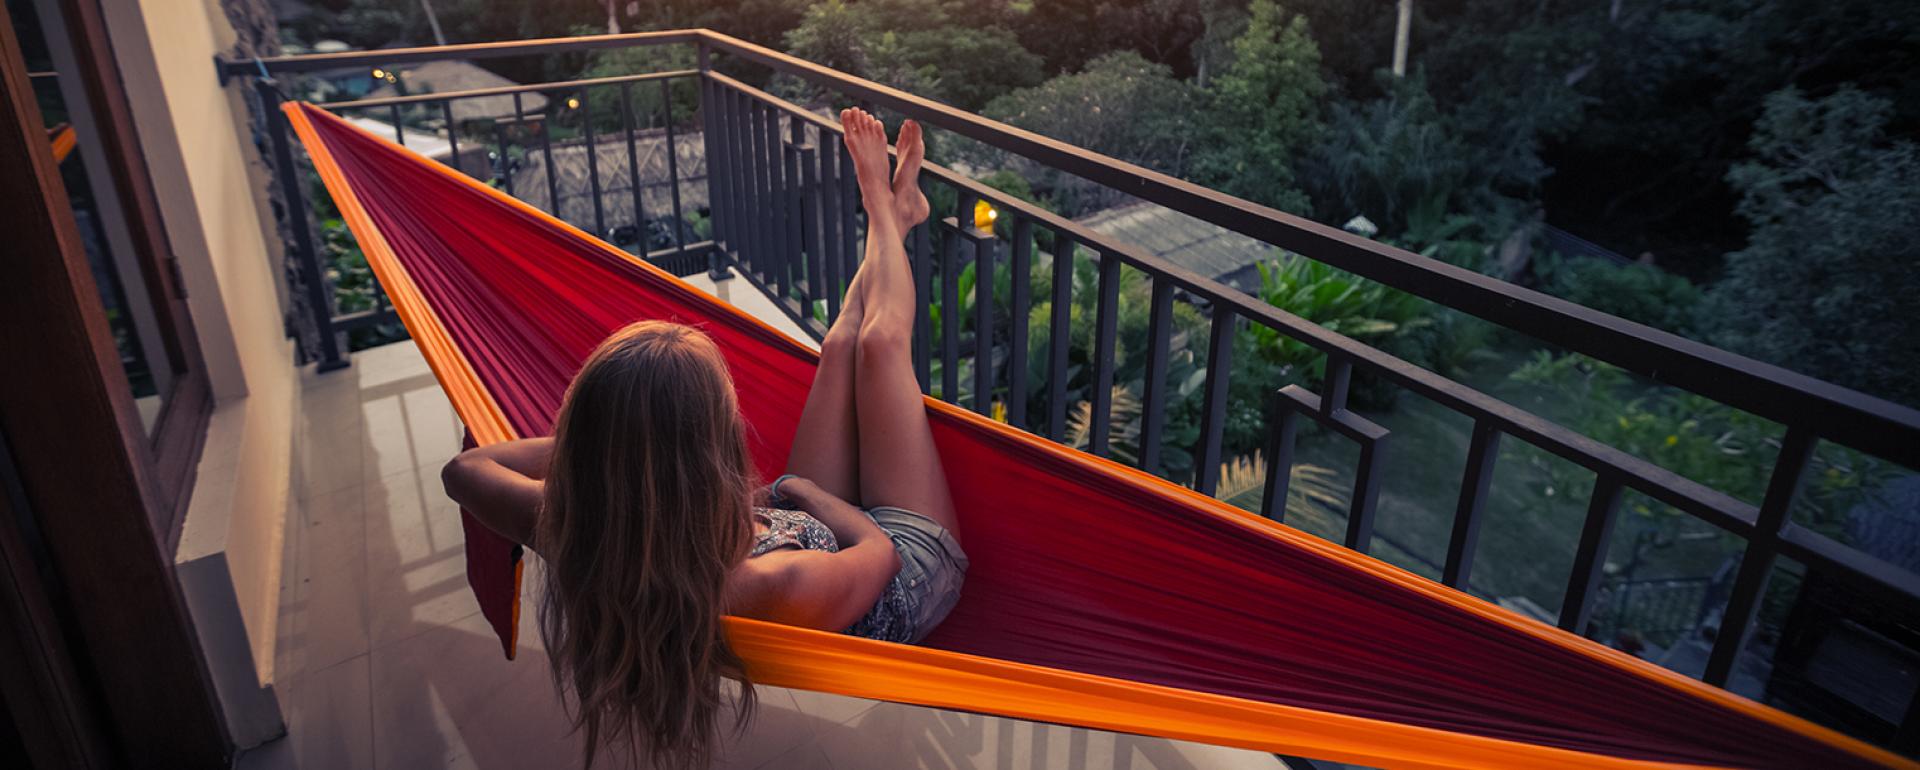 Balkonowe huśtawki – namiastka wakacji w domu